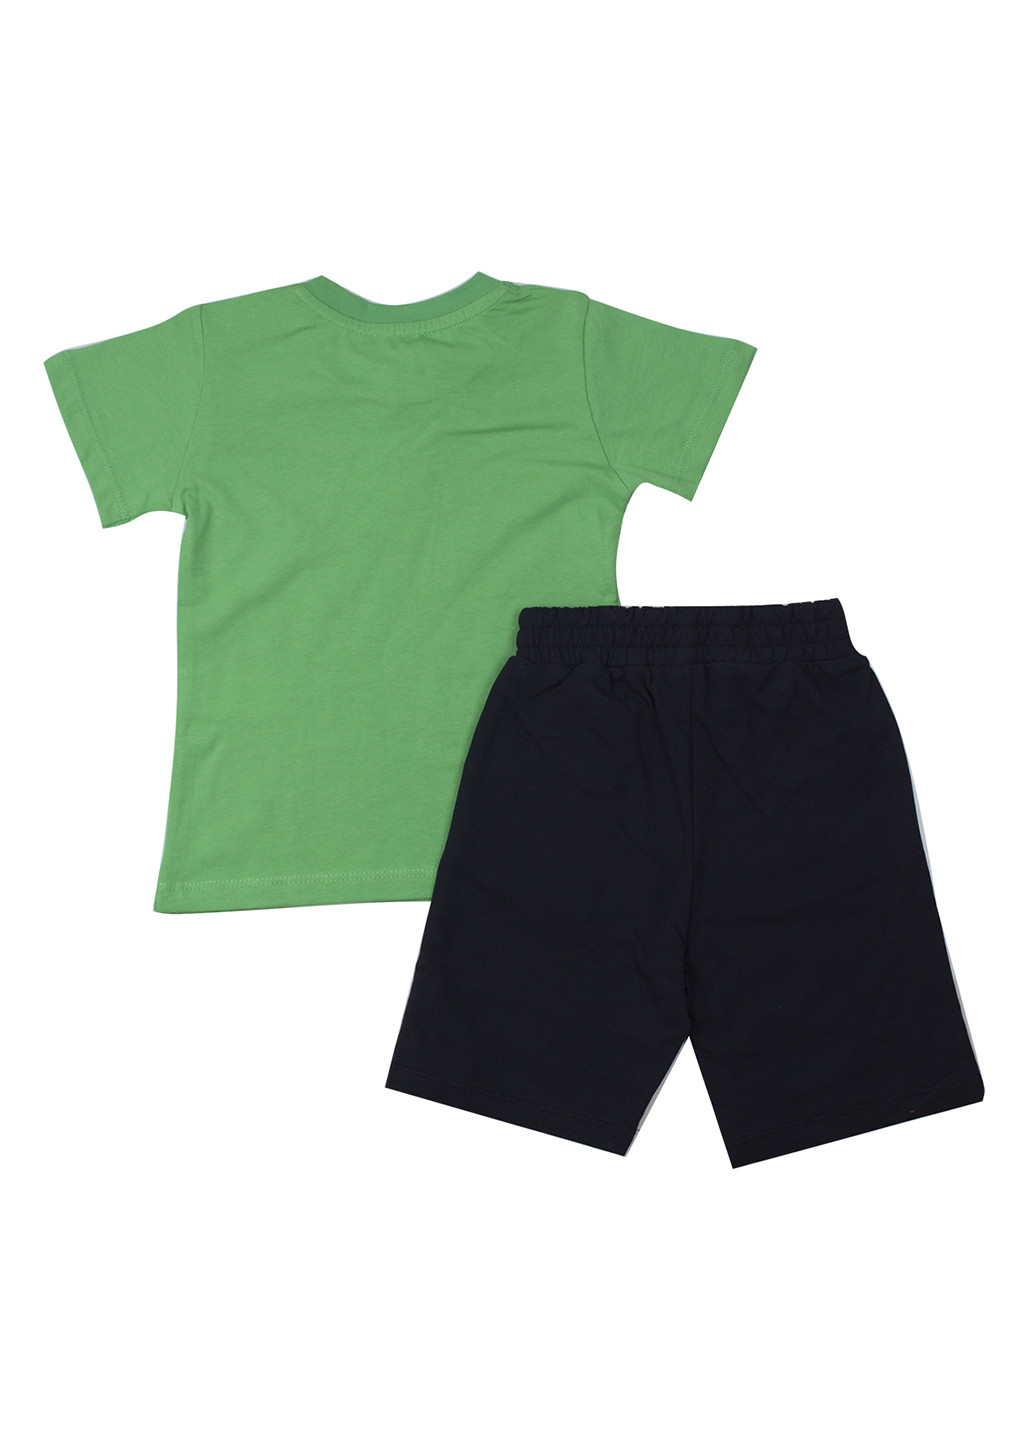 Зеленый летний комплект (футболка, шорты) Breeze